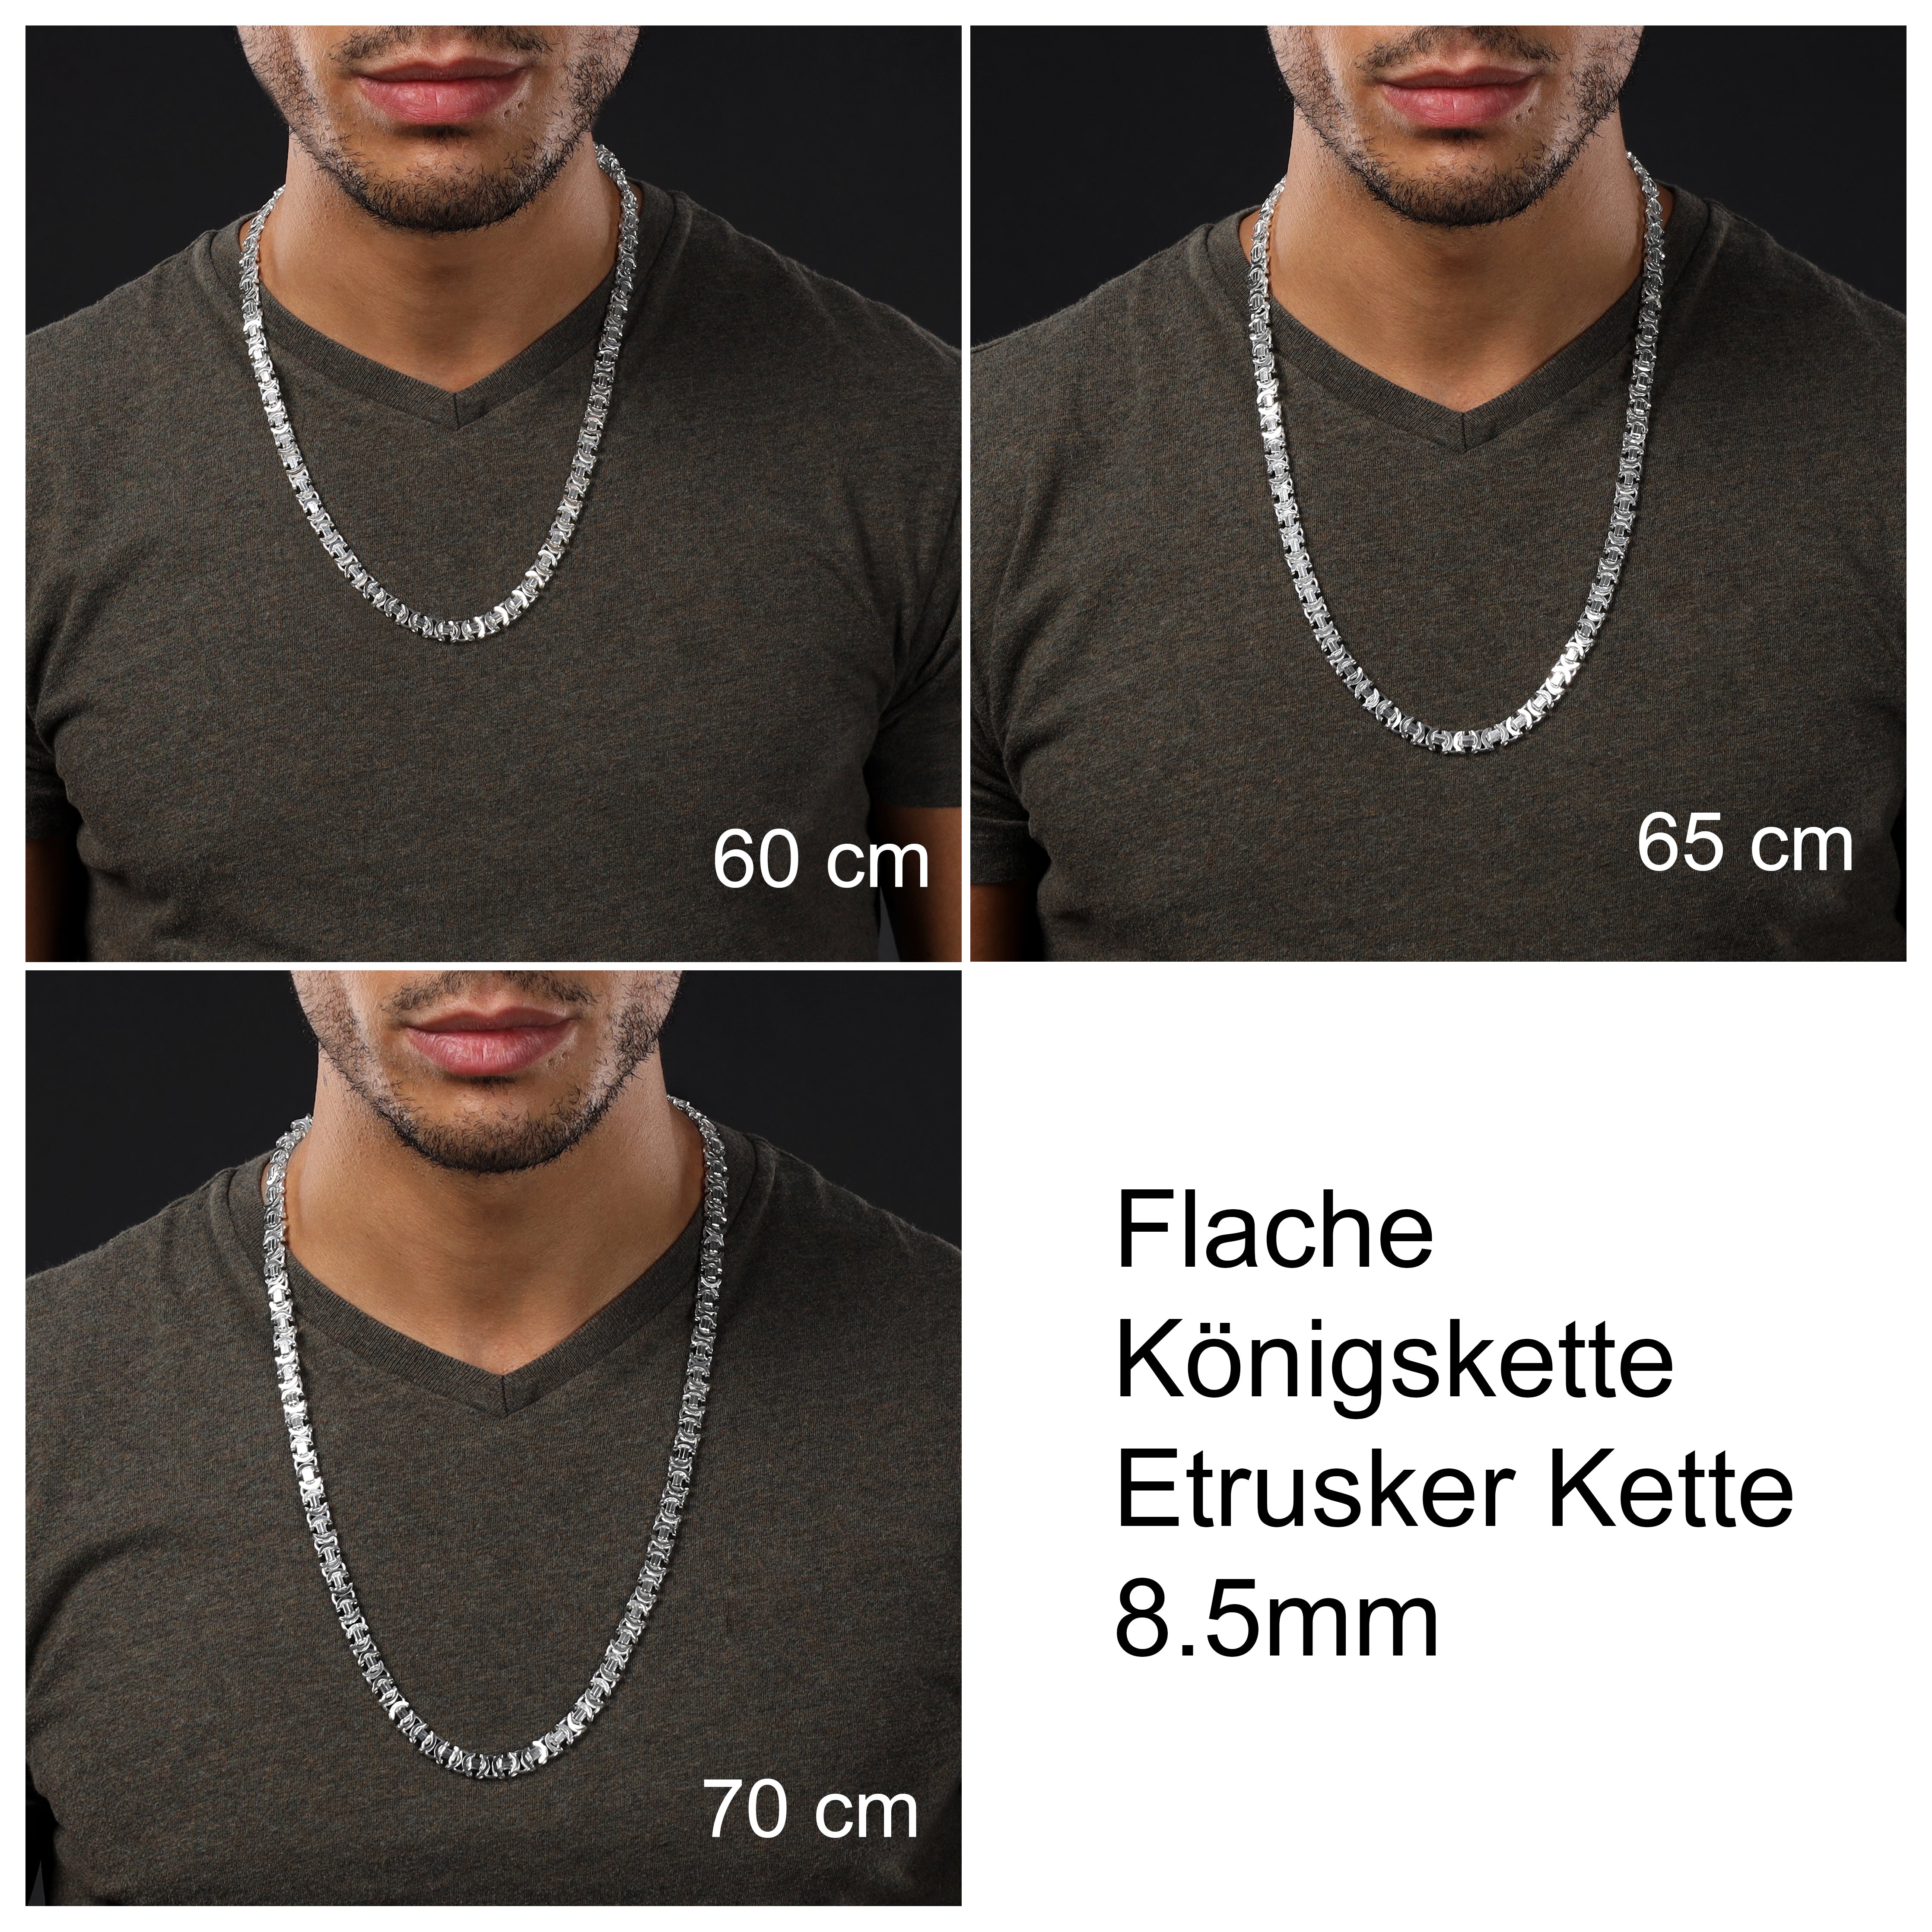 Flache Königskette Etrusker Kette 60/65/70cm lang 8,5mm breit aus 925 Sterling Silber - Taipan Schmuck